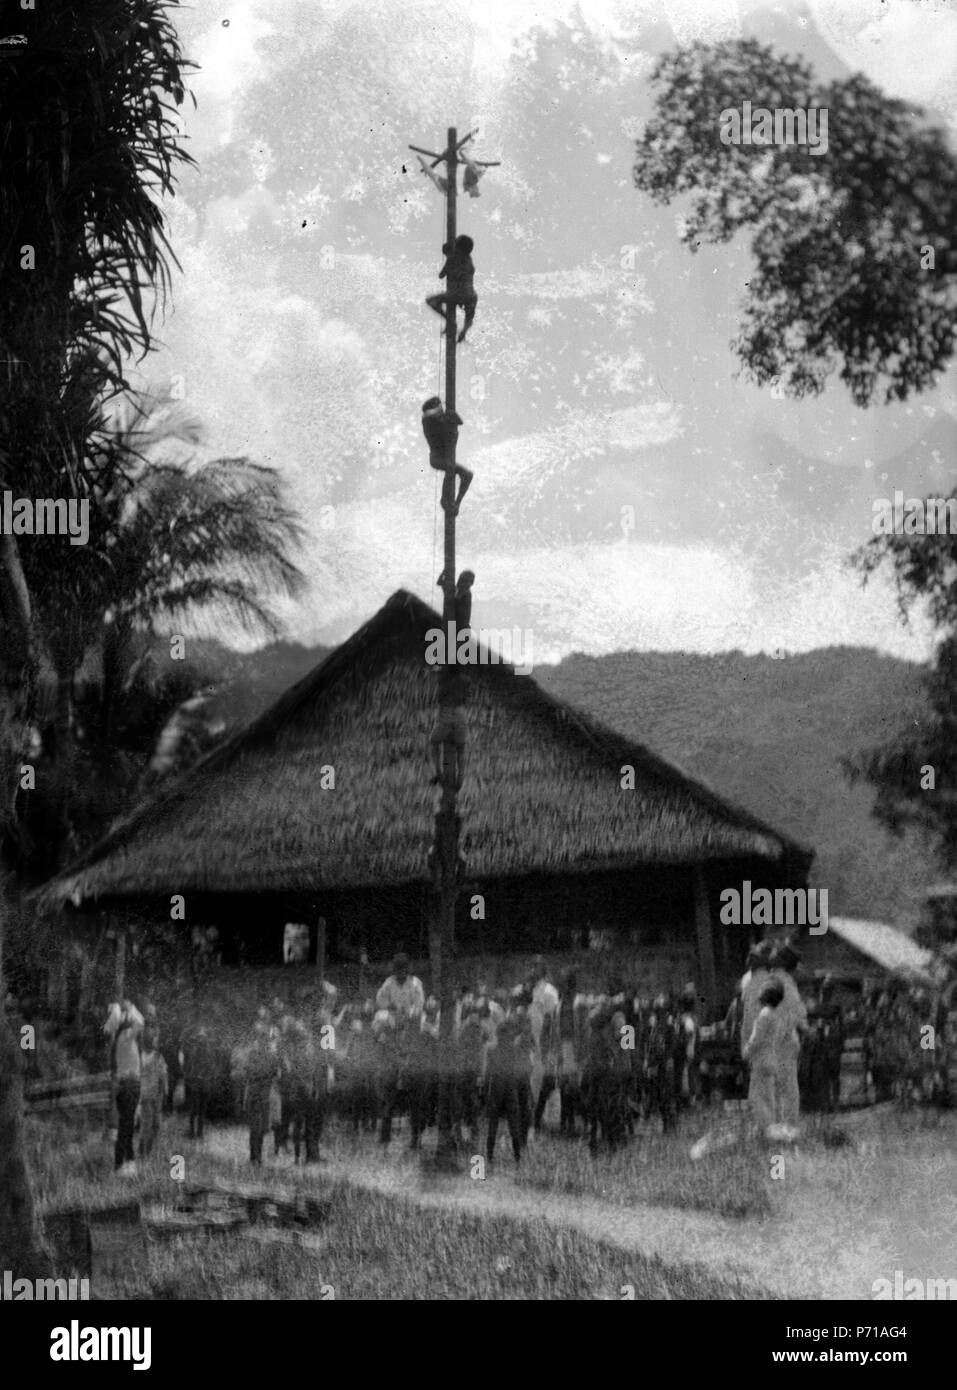 51 Skolbarnen få klättra på såpad stång. Kulawi, Sulawesi. Indonesien - SMVK - 022138 Stock Photo